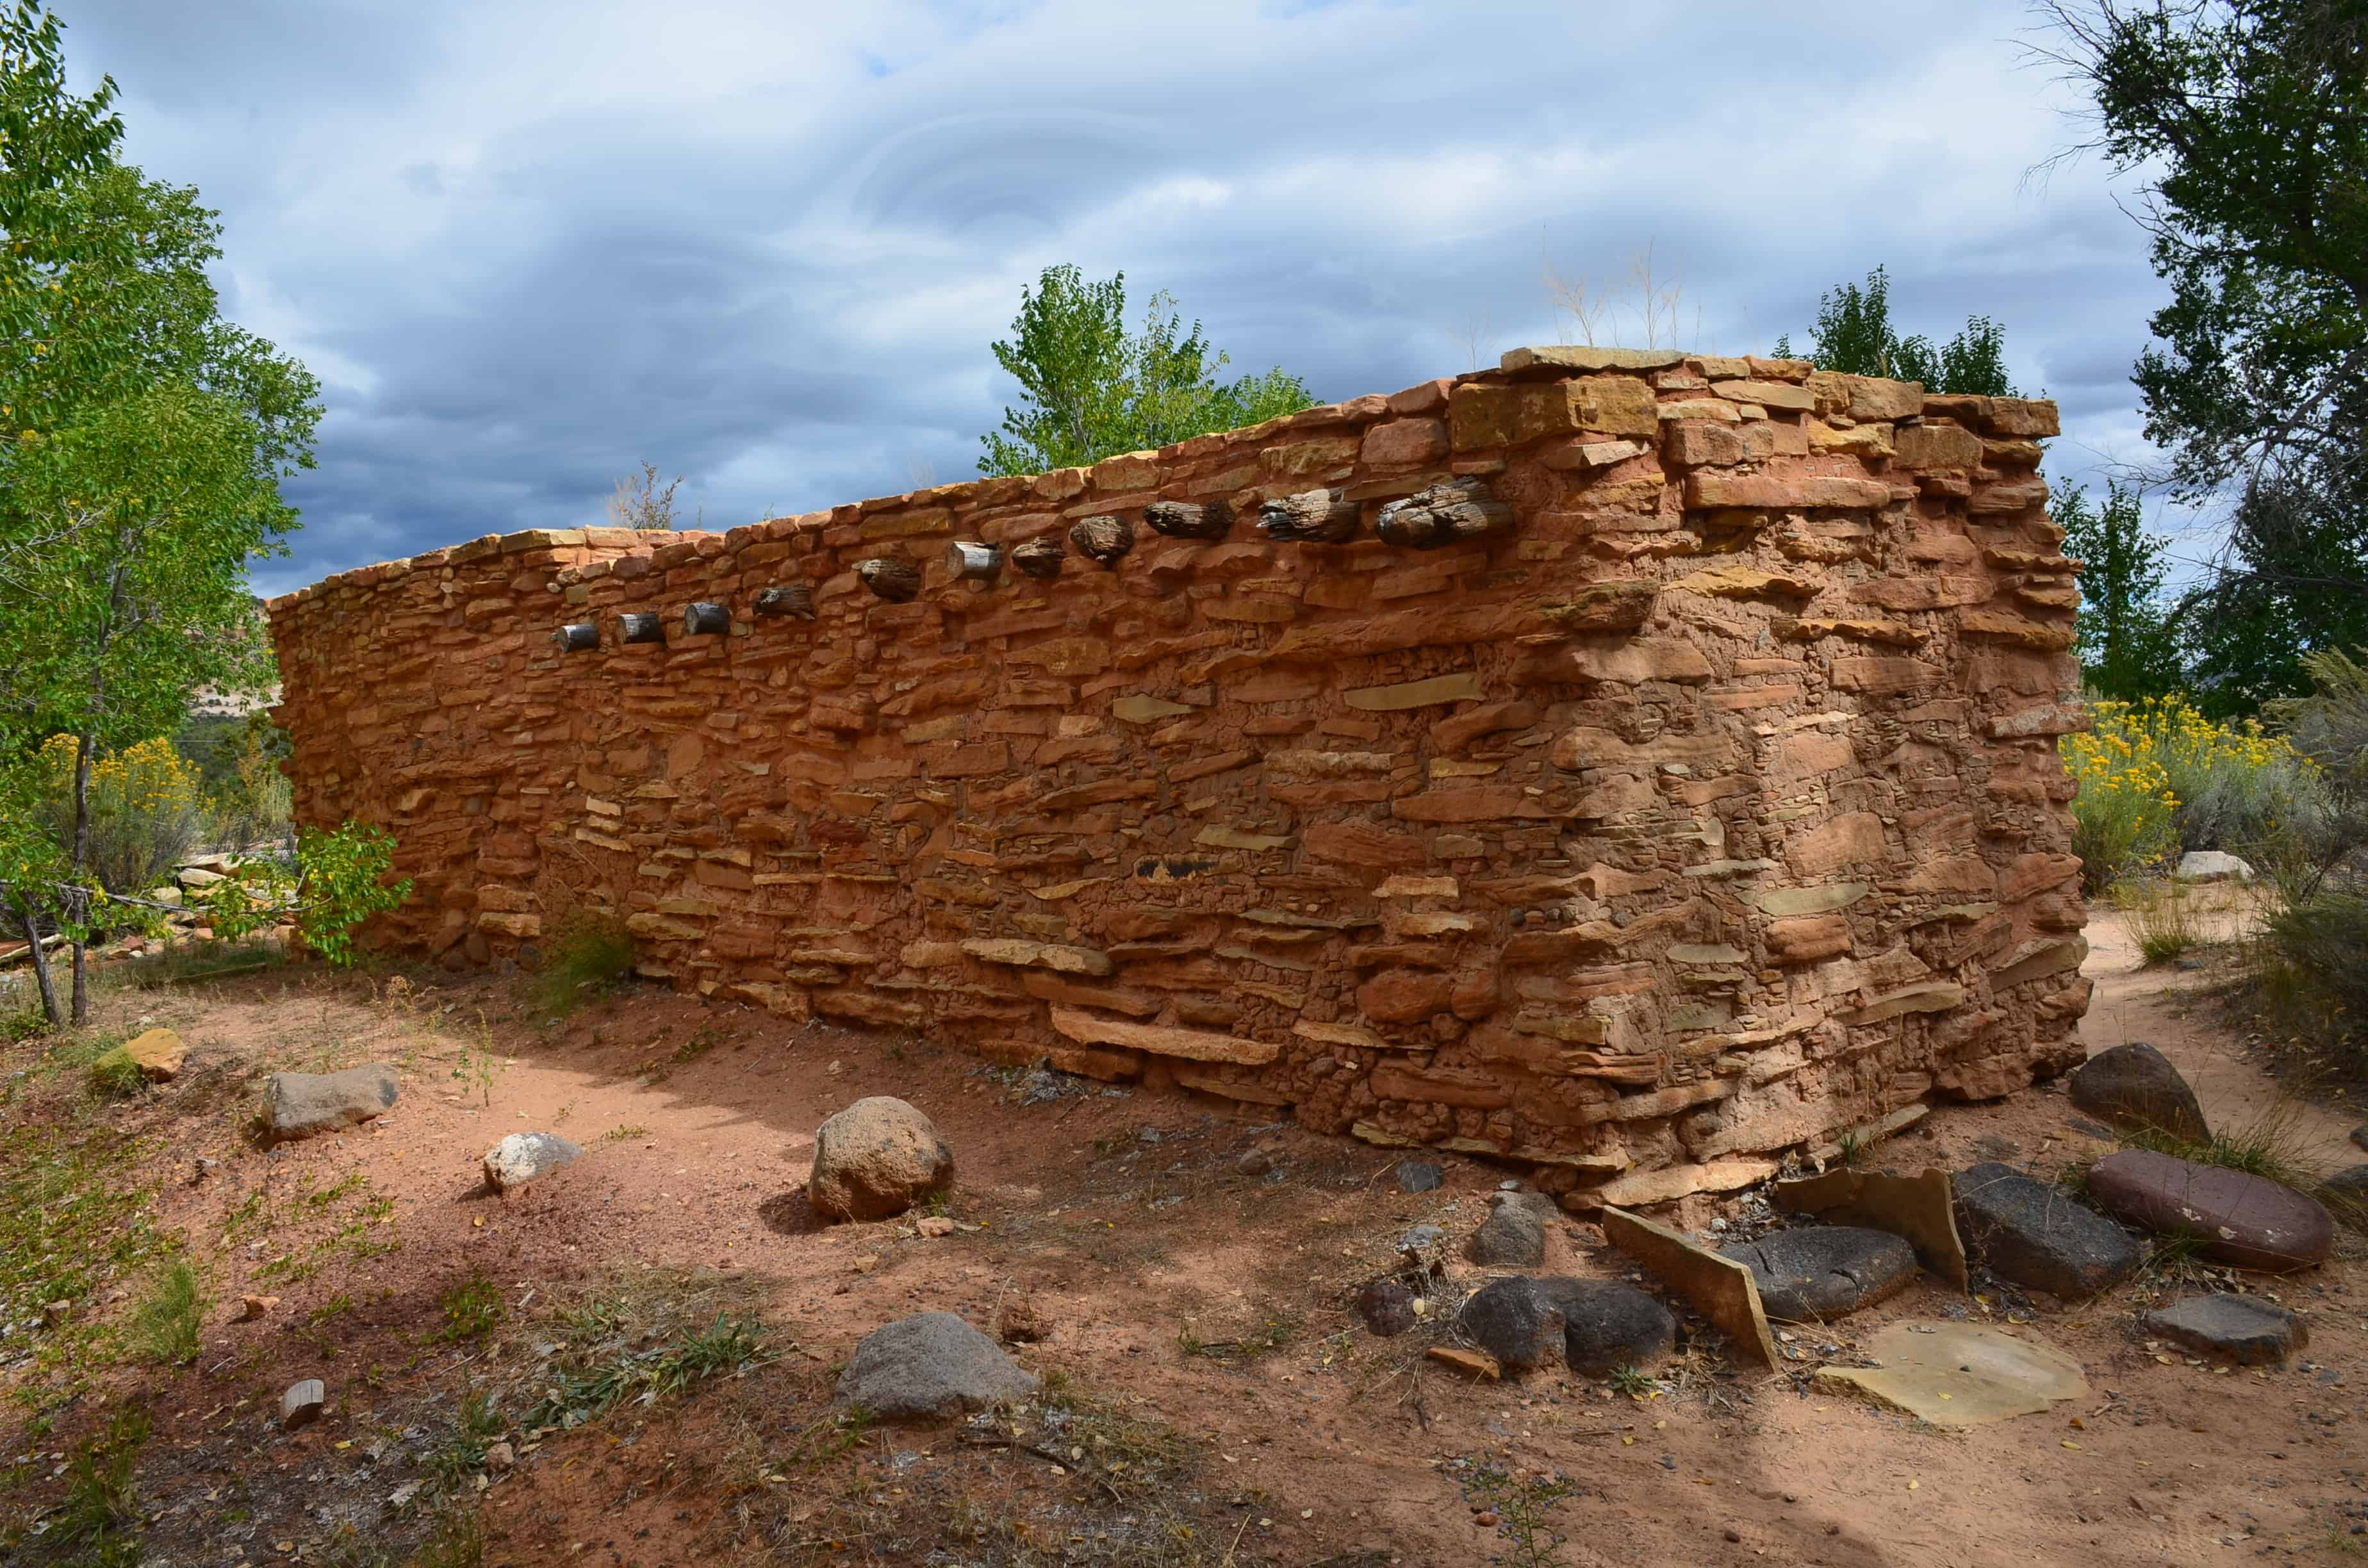 Replica dwelling at Anasazi State Park Museum in Boulder, Utah